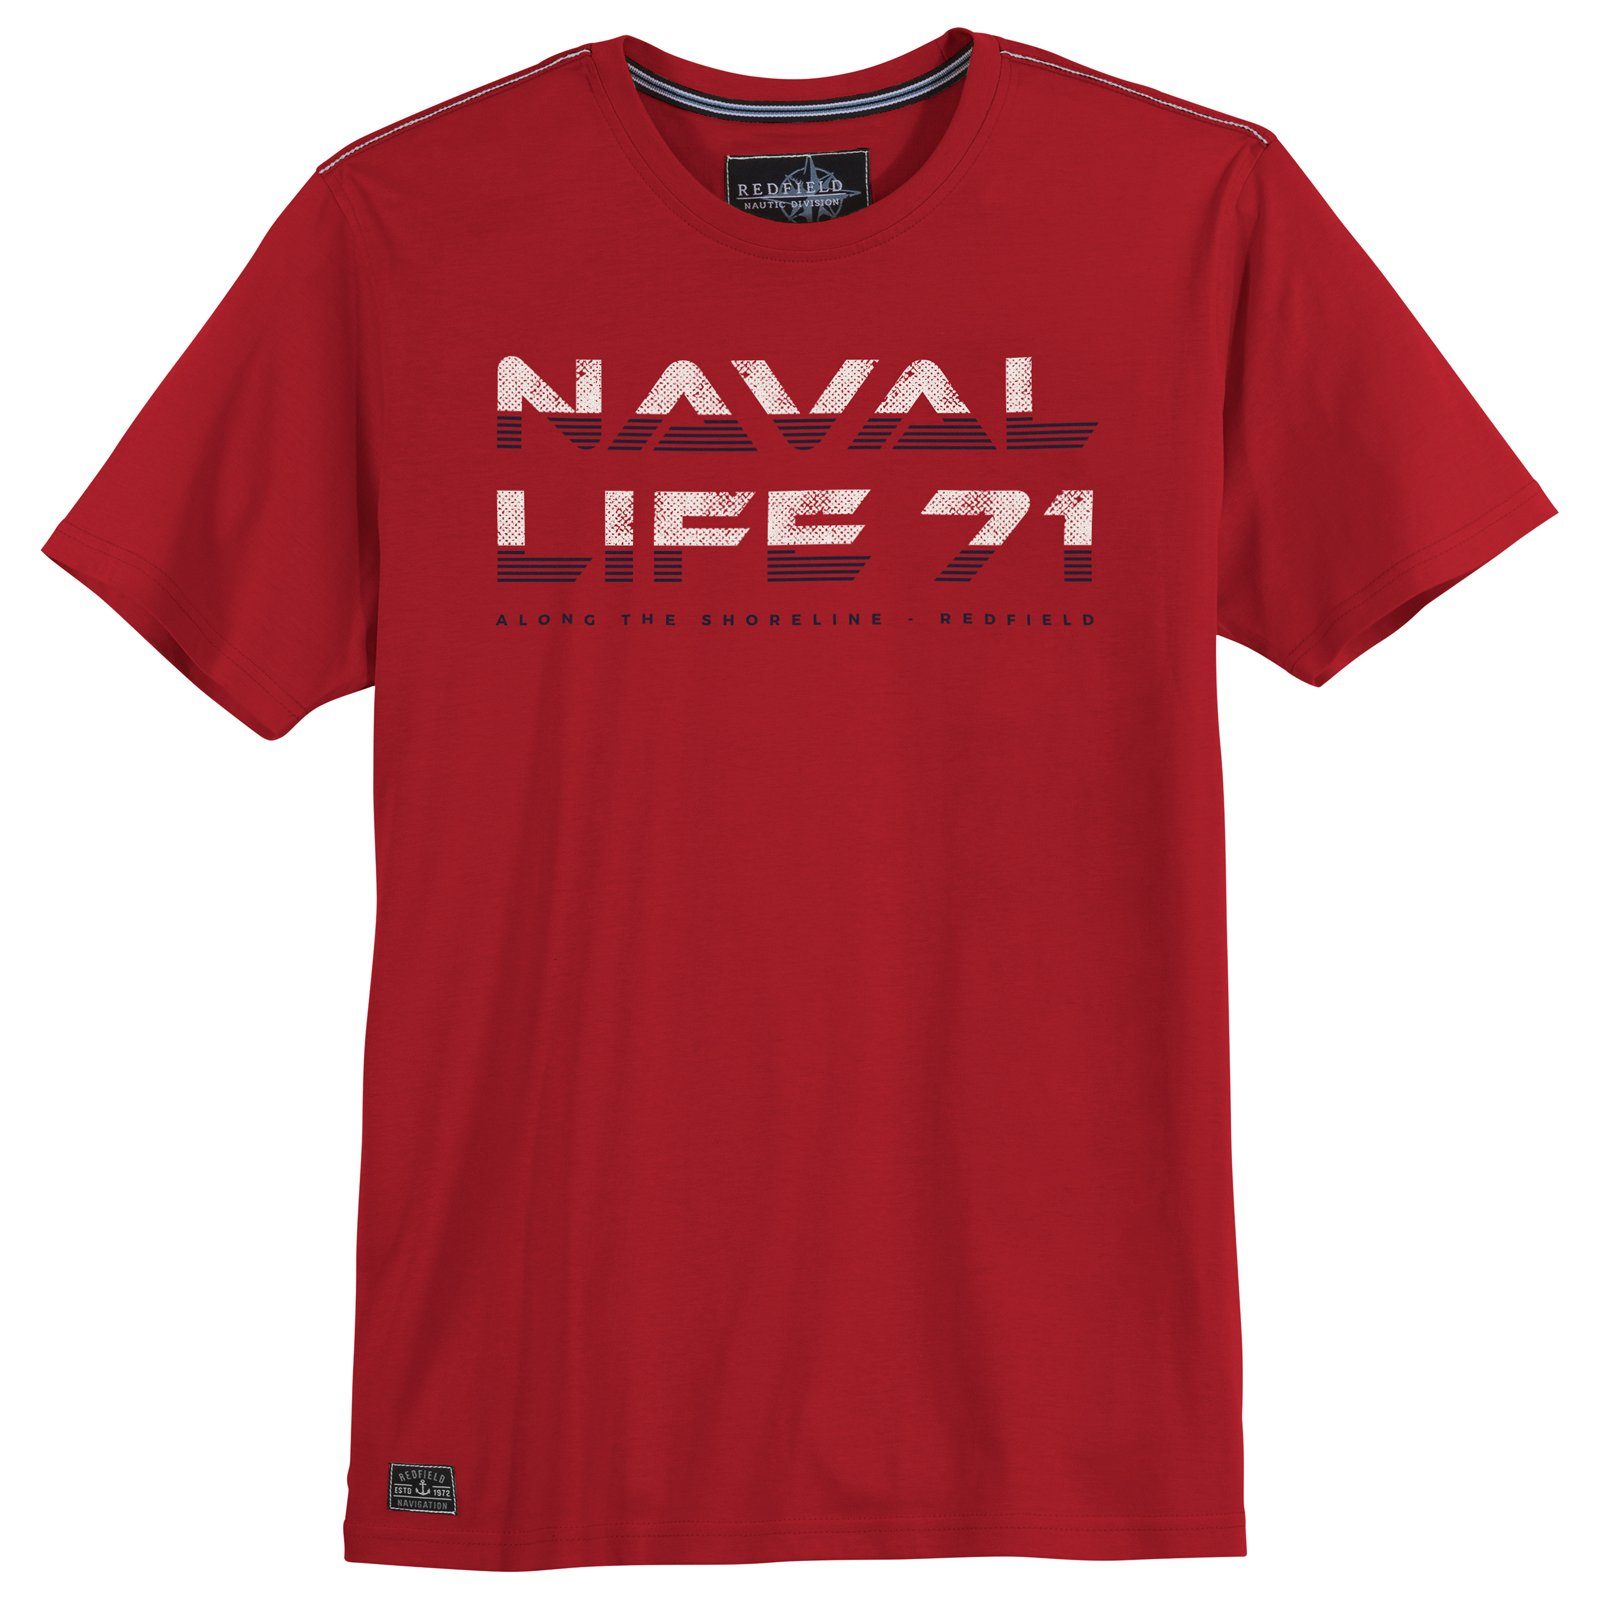 Rundhalsshirt redfield rot Redfield 71 Größen Herren Life Große T-Shirt Naval